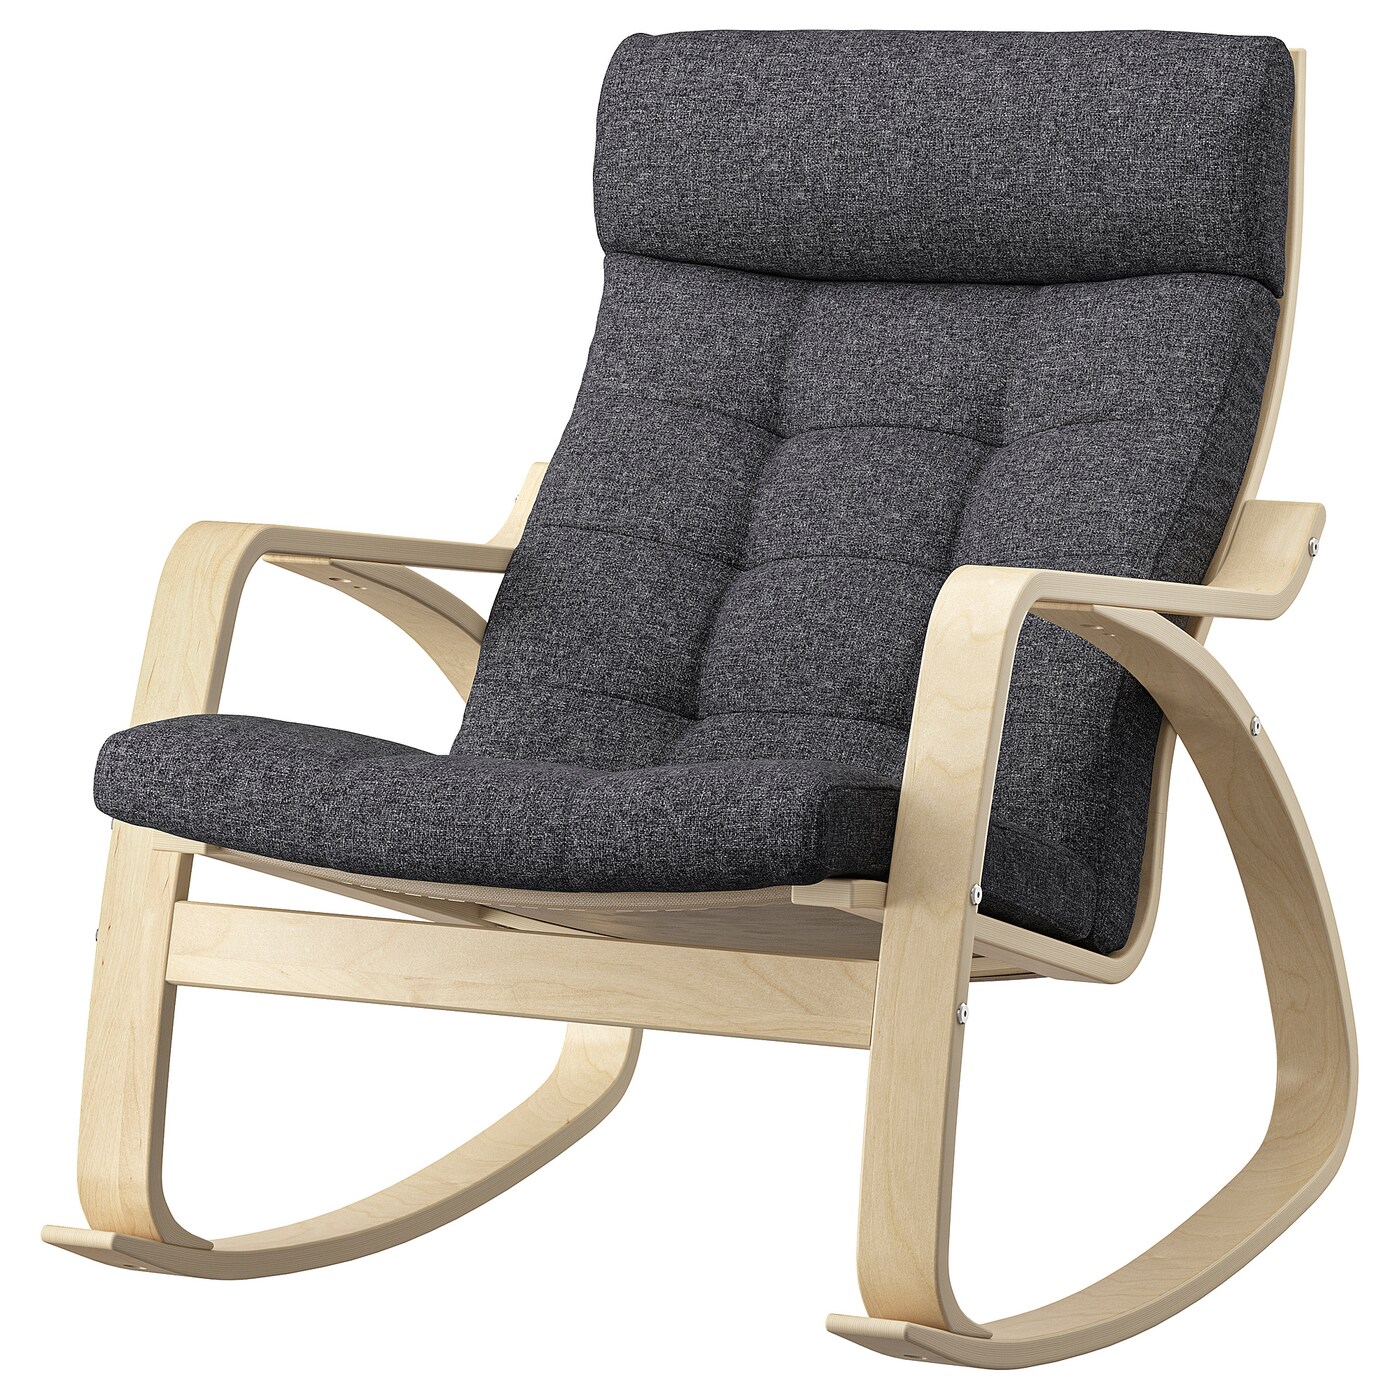 ПОЭНГ Кресло-качалка, березовый шпон/Гуннаред темно-серый POÄNG IKEA детское электрическое кресло качалка удобное кресло качалка бесплатная установка